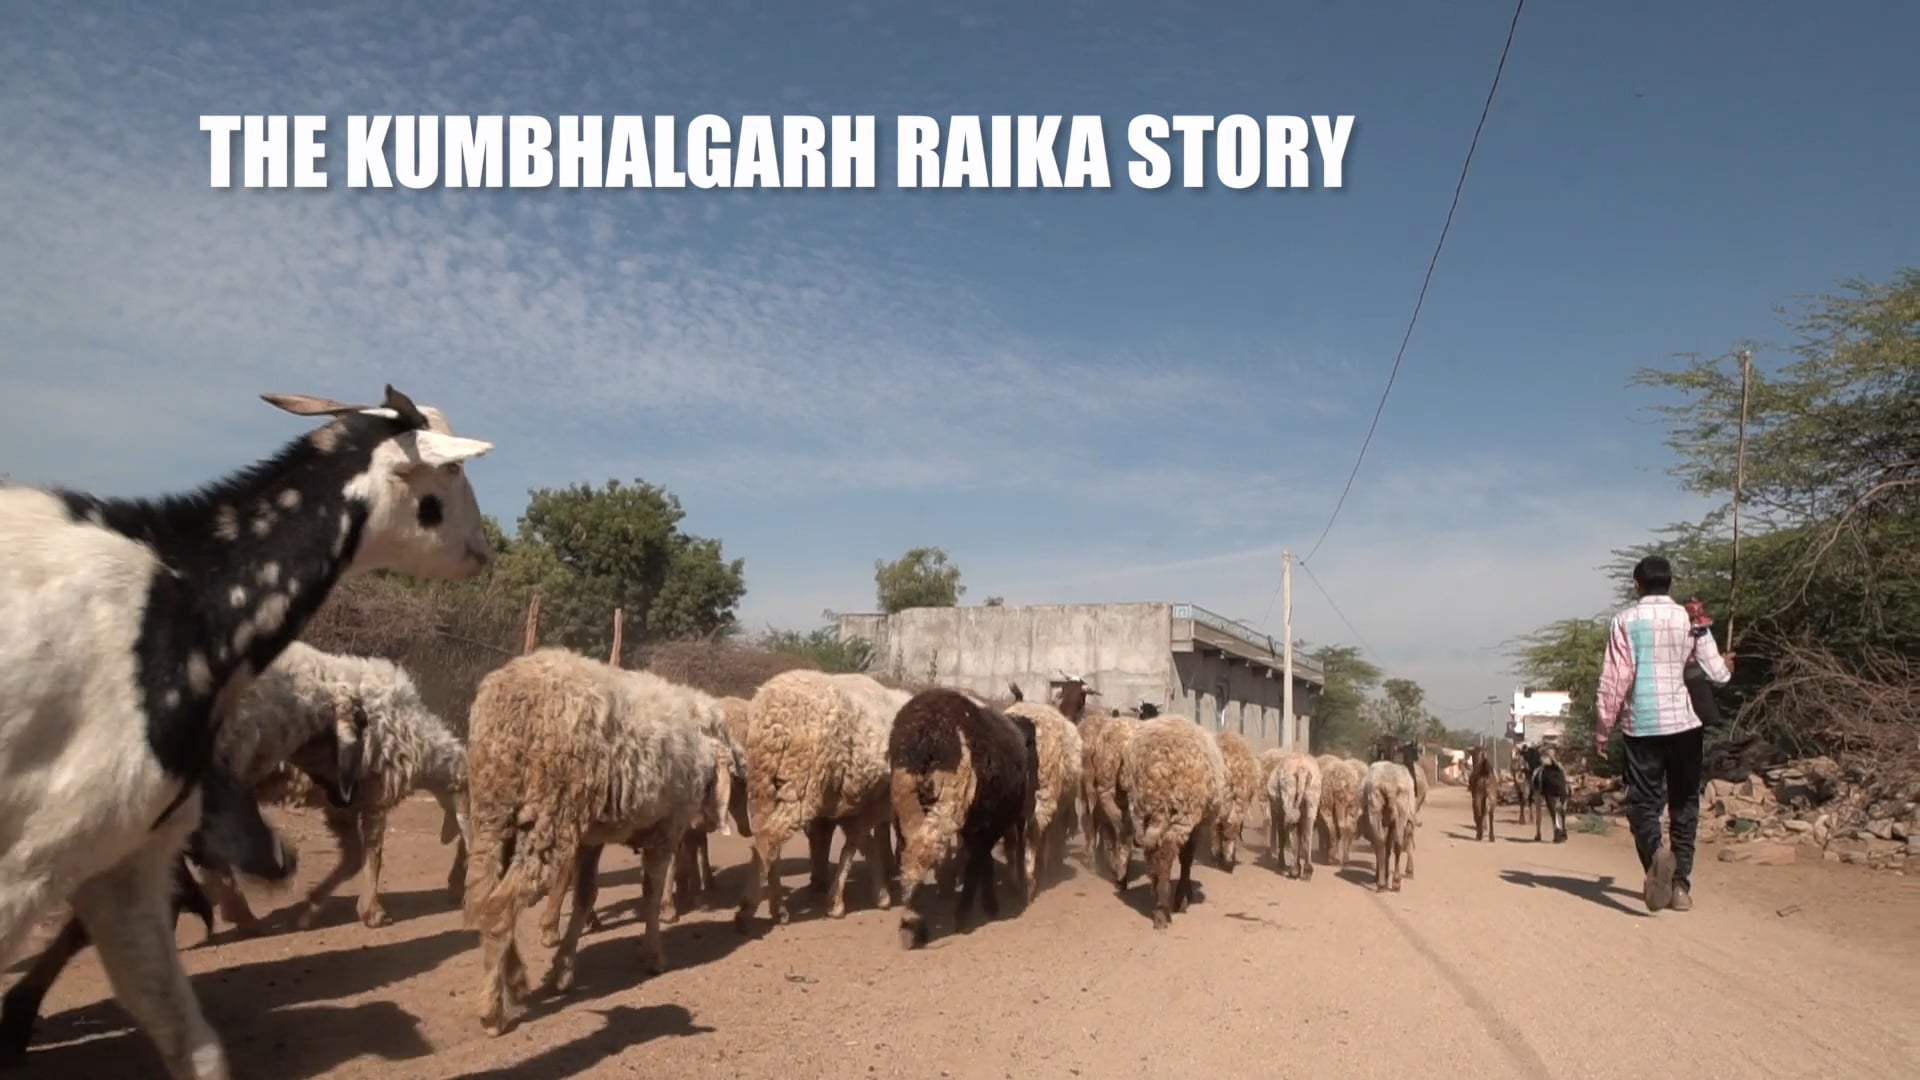 The Kumbalgarh Raika story